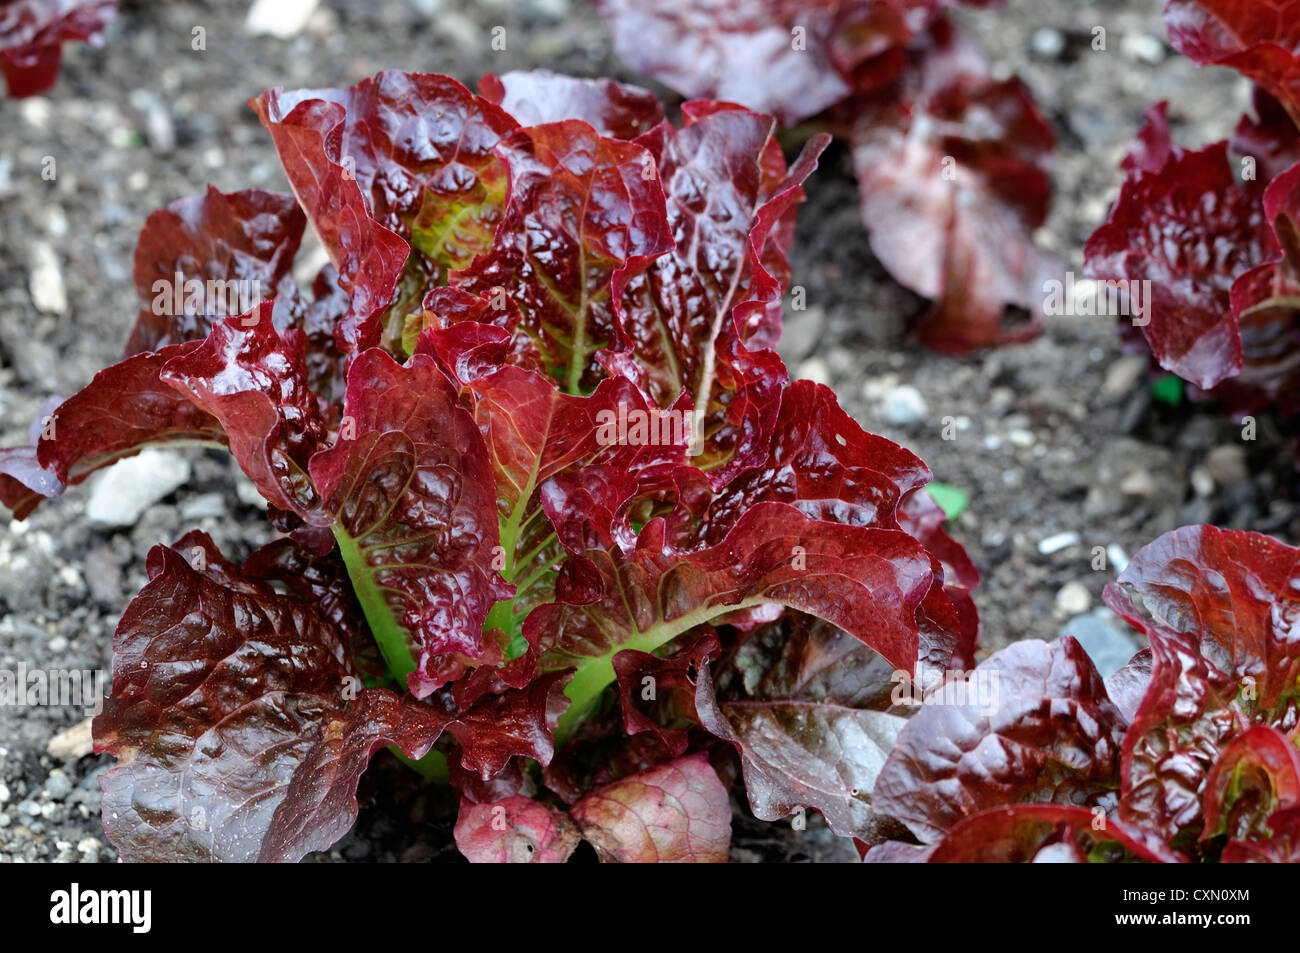 Salat Blenden Cos Lactuca Sativa handtellergroße Mini MIDI-Romaine sukkulenten Blätter essbare Pflanzen Nahrungspflanzen Burgund Salatblätter Stockfoto